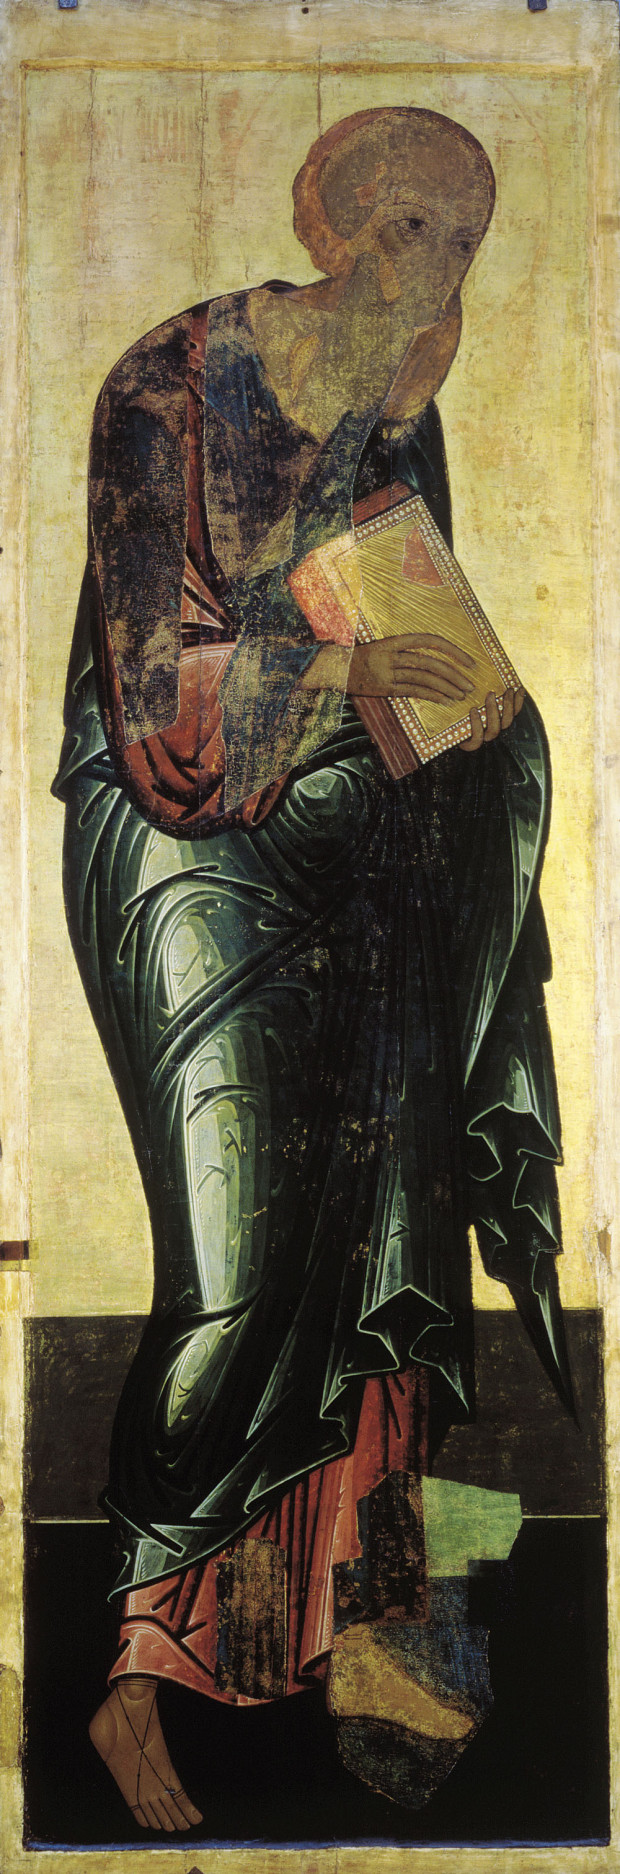 Αντρέι Ρουμπλιόβ - Άγιος Ιωάννης ο Θεολόγος, 1408